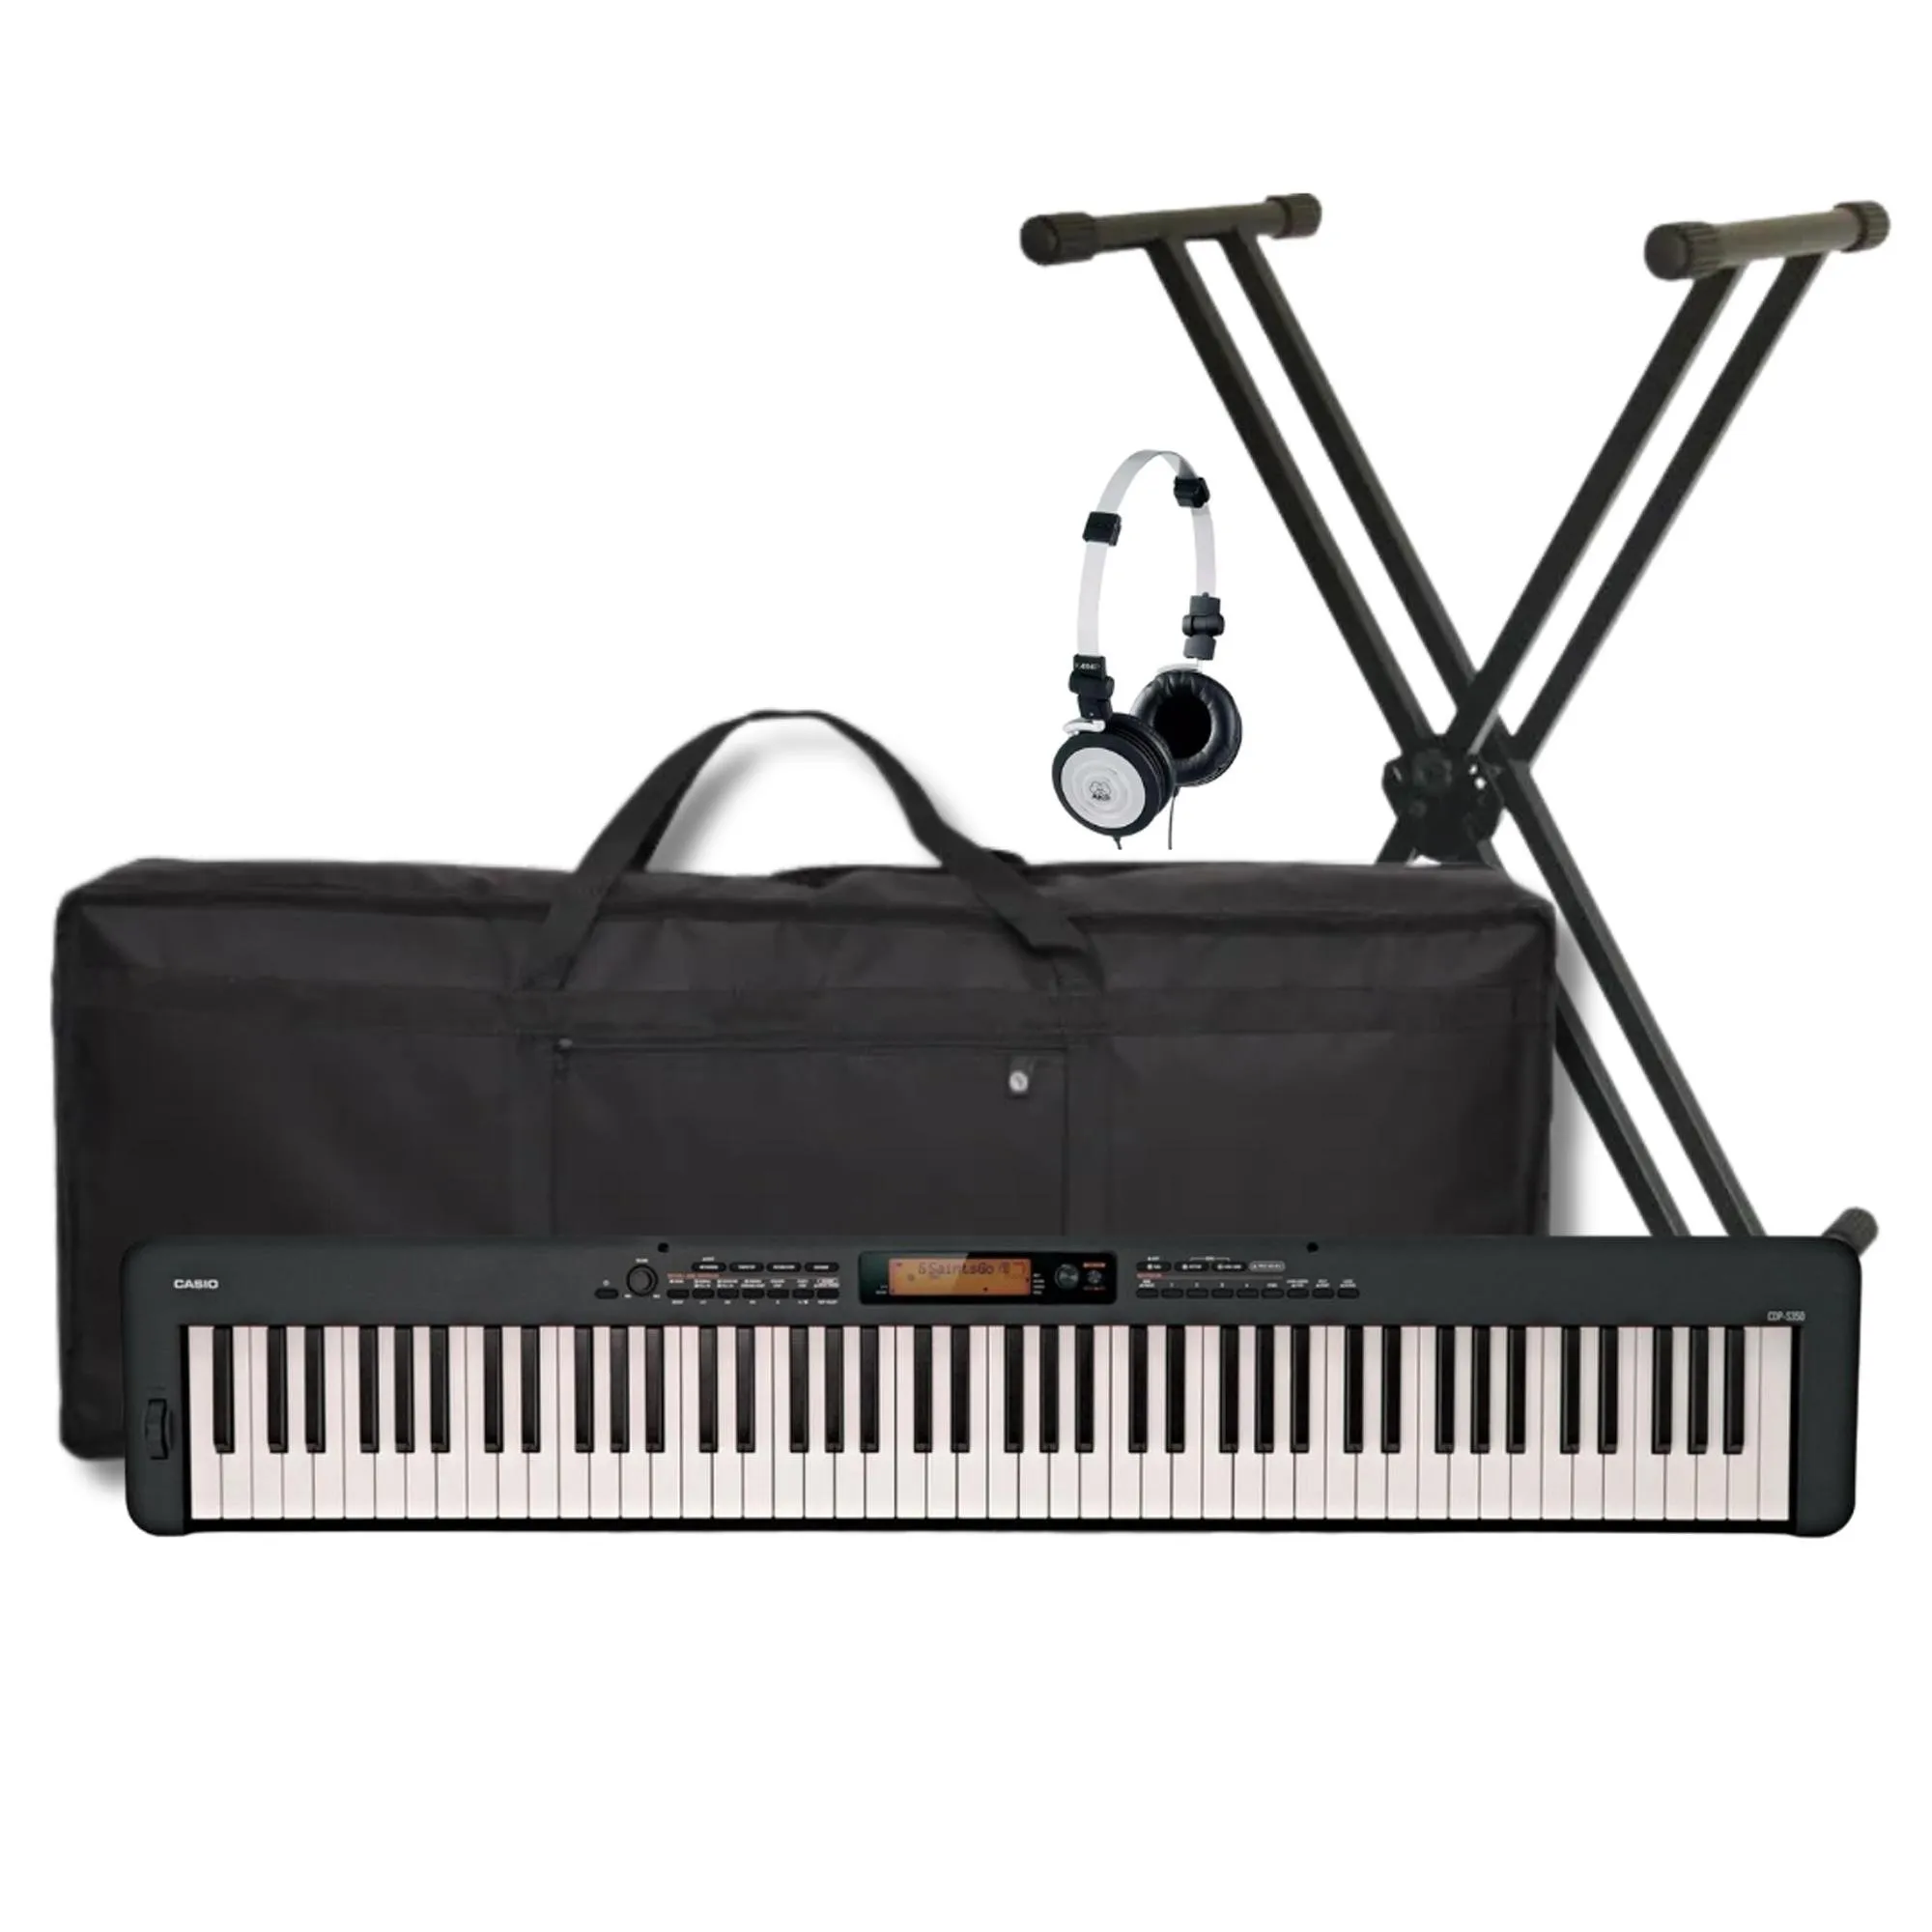 Kit Piano Digital Casio CDP-S350 PT+ Suporte + Acessórios por 4.510,90 à vista no boleto/pix ou parcele em até 12x sem juros. Compre na loja Mundomax!